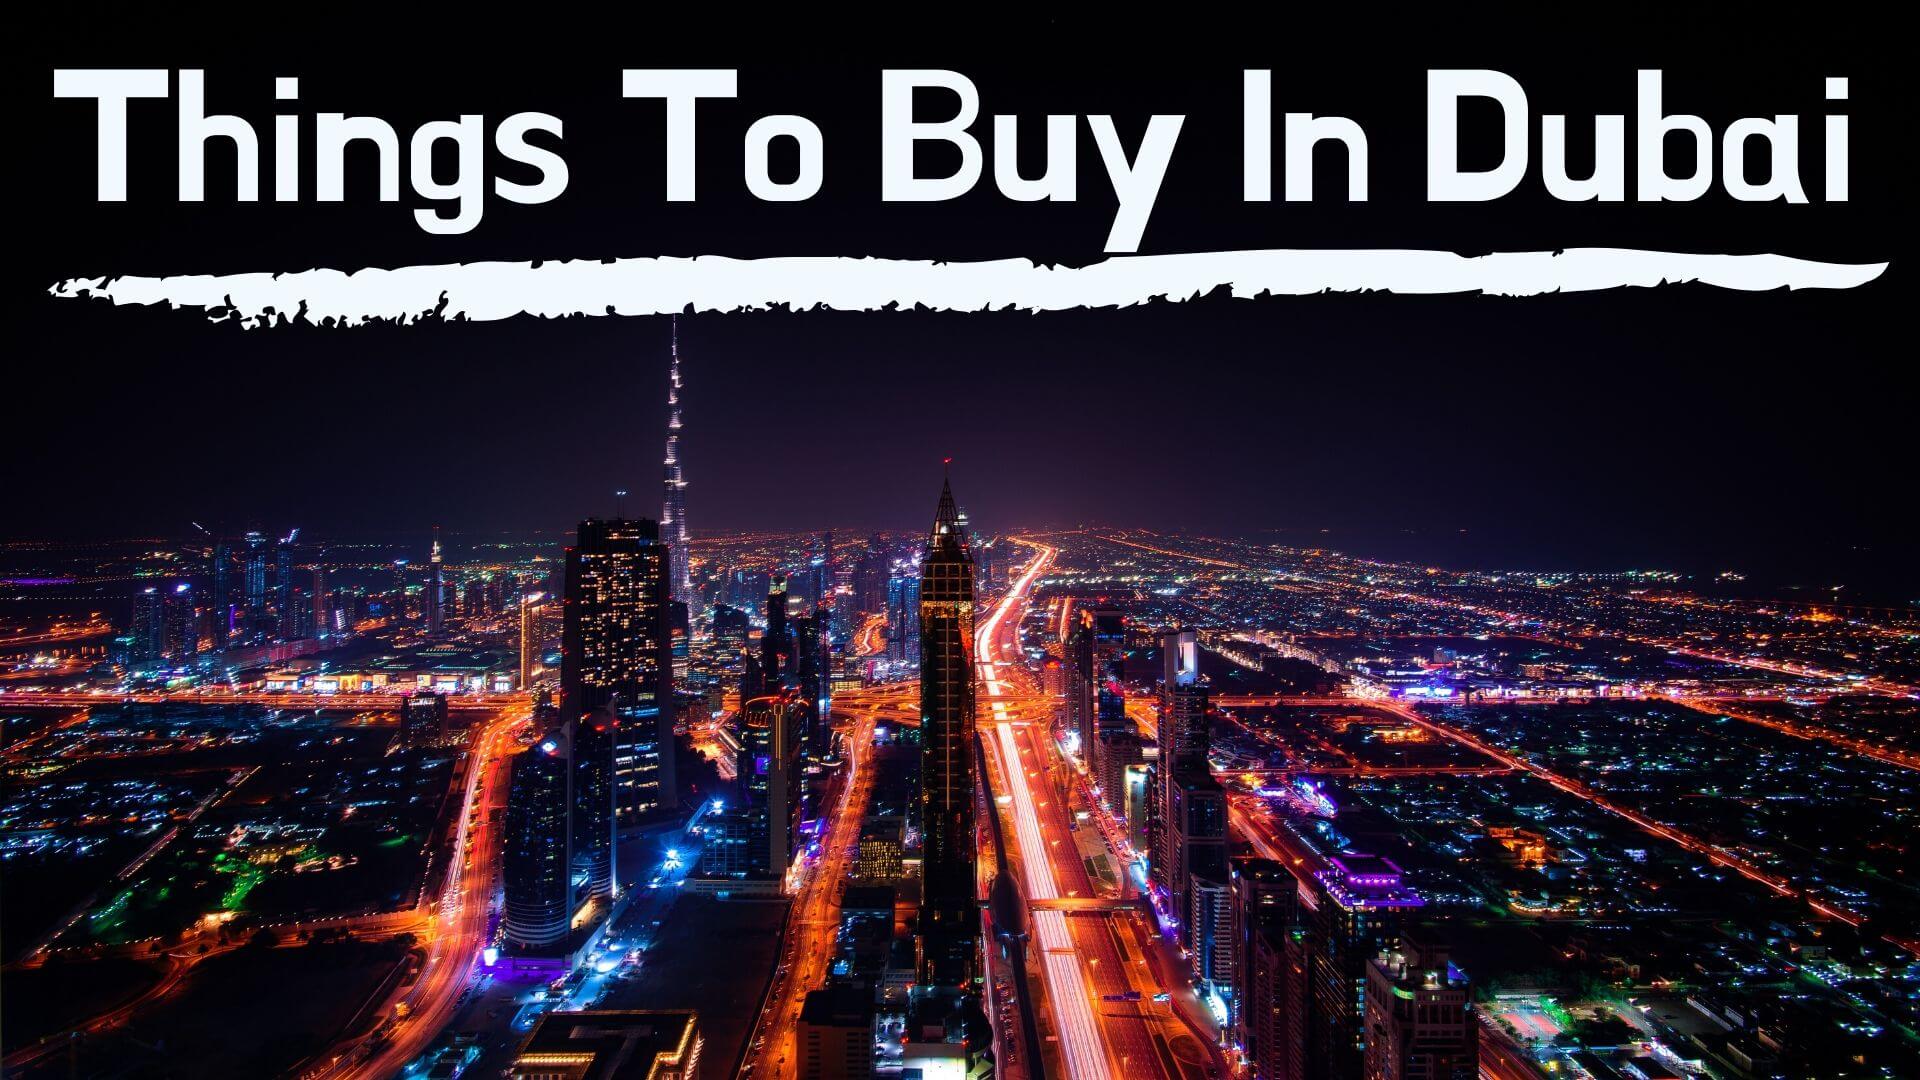 15 Best Things to Buy in Dubai for Ladies